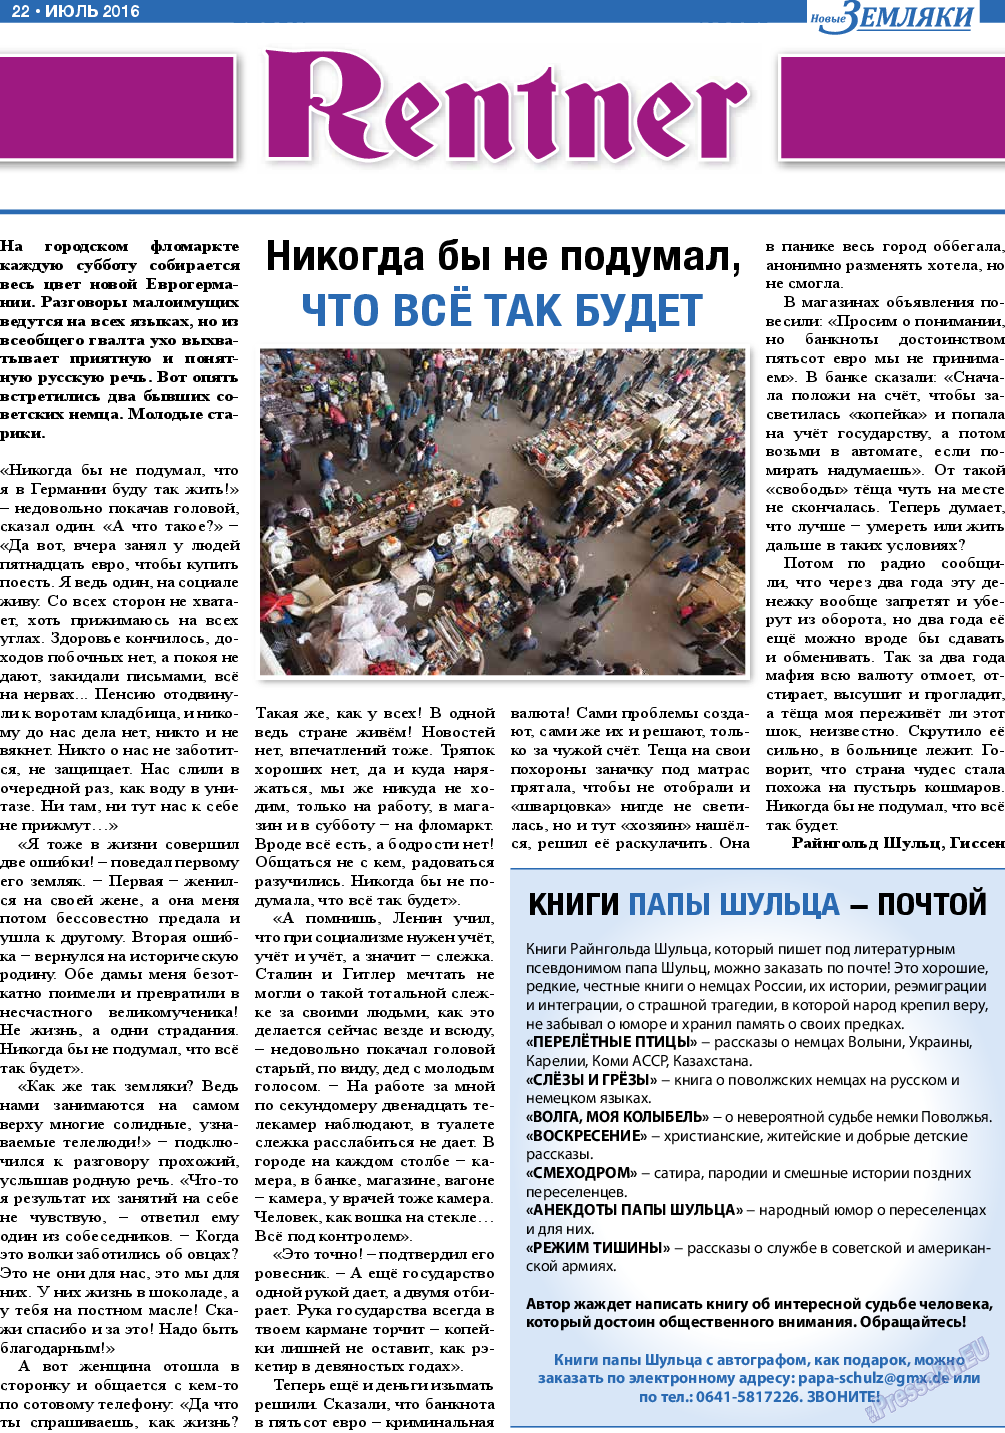 Новые Земляки, газета. 2016 №7 стр.22